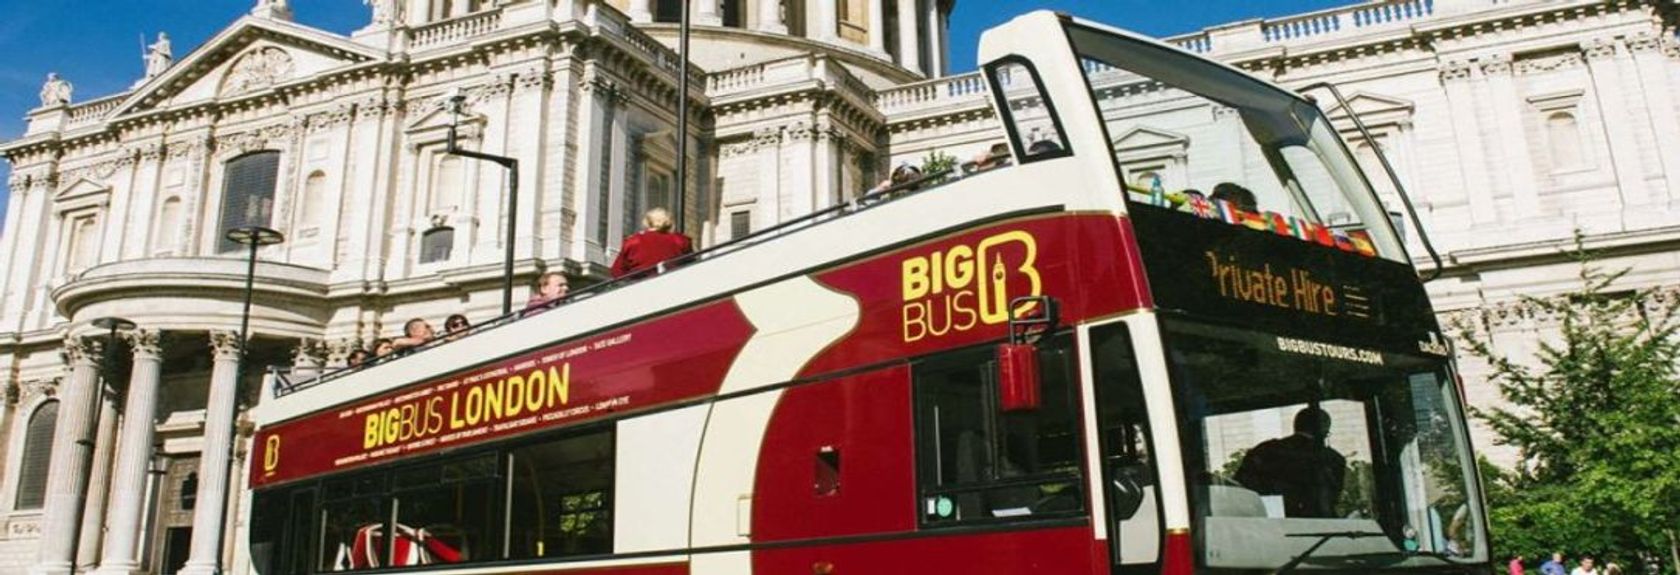 Os ônibus hop-on hop-off da Big Bus London são a maneira ideal de ver de forma rápida e fácil todos os destaques de Londres